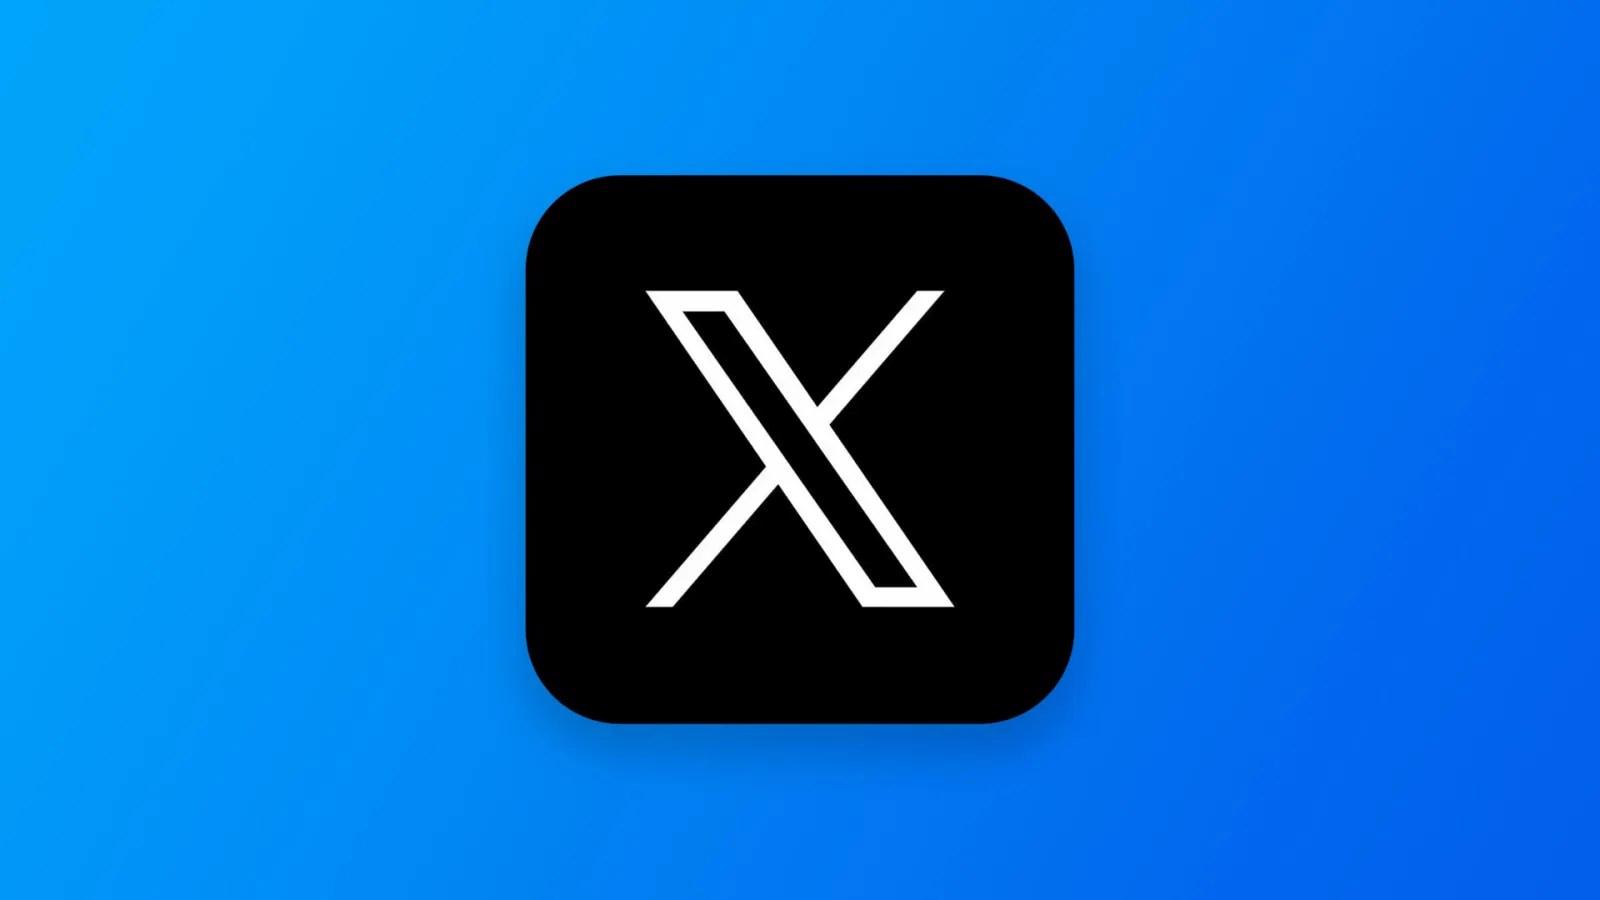 X’in yeni güvenlik özelliği duyuruldu: Şifresiz giriş geliyor